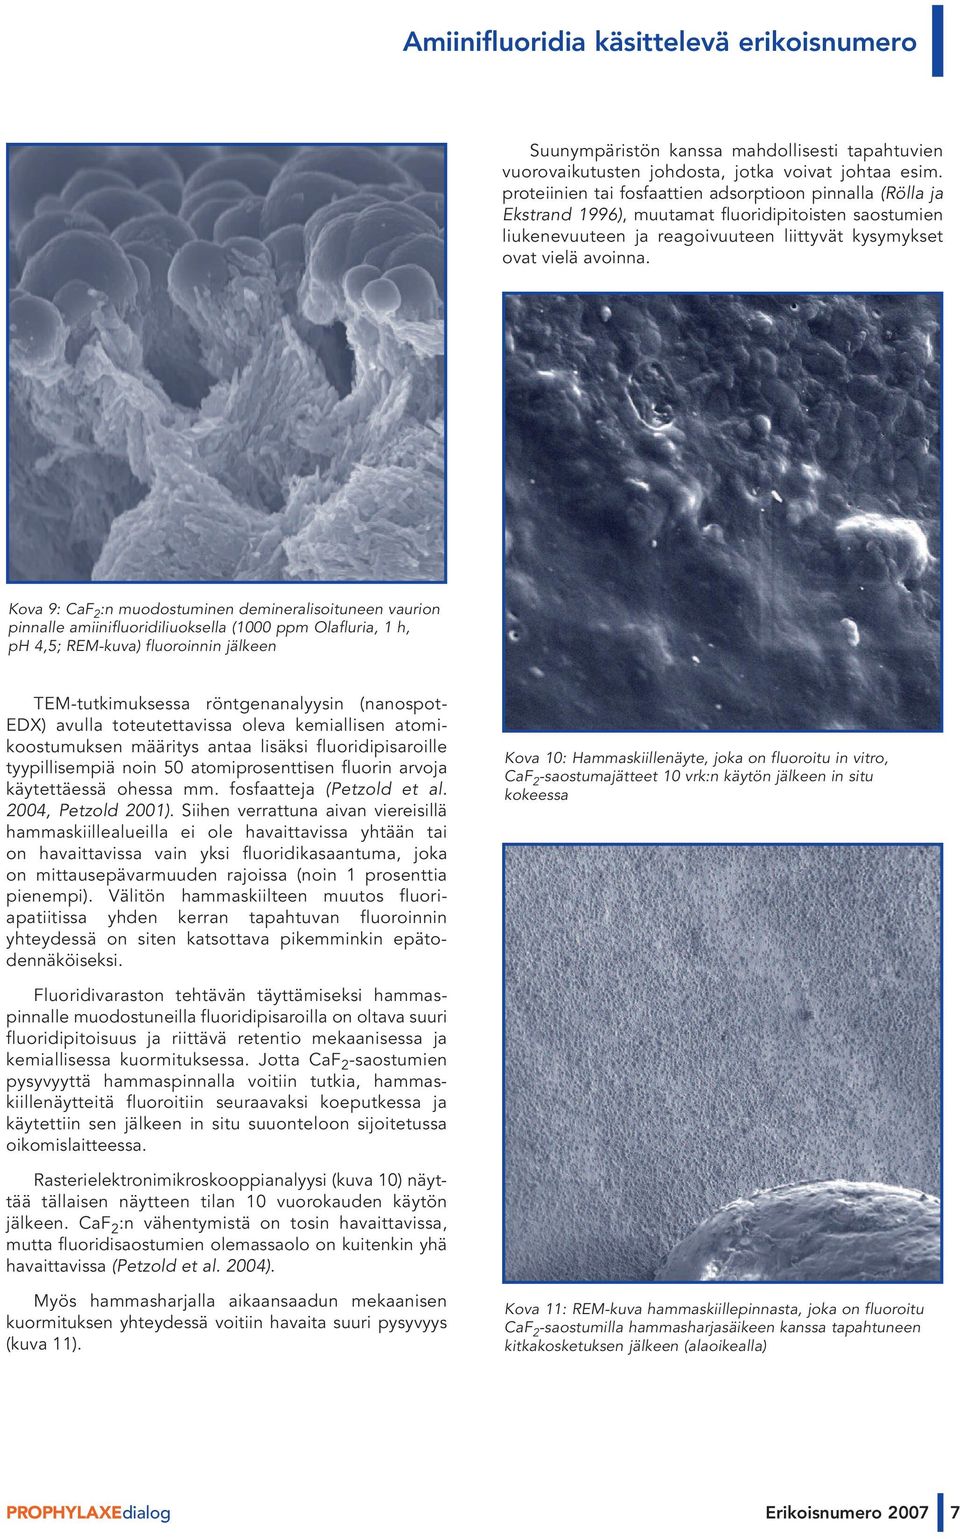 Kova 9: CaF 2 :n muodostuminen demineralisoituneen vaurion pinnalle amiinifluoridiliuoksella (1000 ppm Olafluria, 1 h, ph 4,5; REM-kuva) fluoroinnin jälkeen TEM-tutkimuksessa röntgenanalyysin